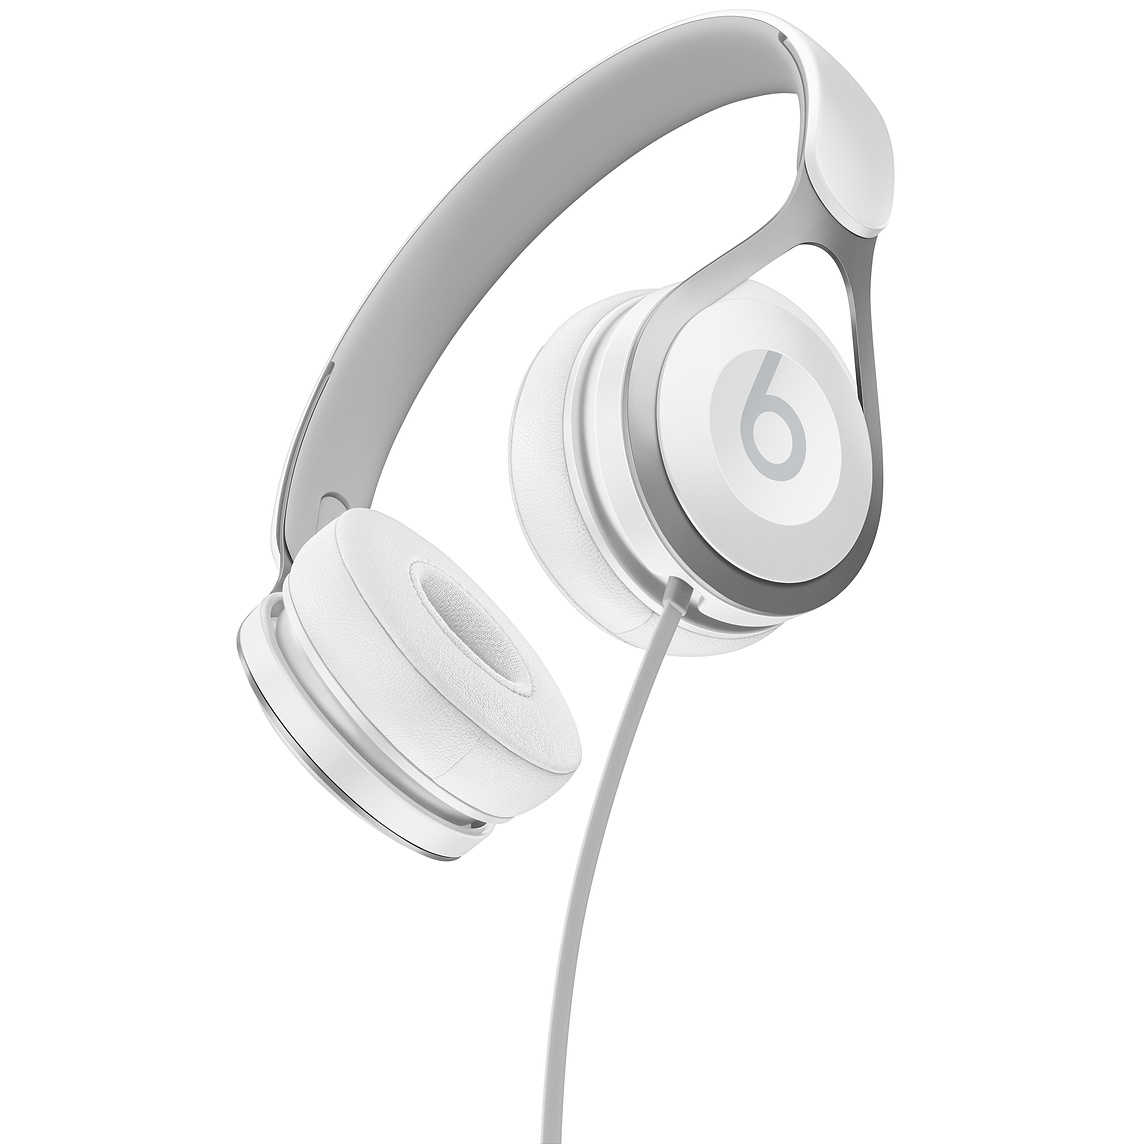 【Beats】EP 白 耳罩式耳機 含線控可通話 ★ 免運 ★ 送收納袋